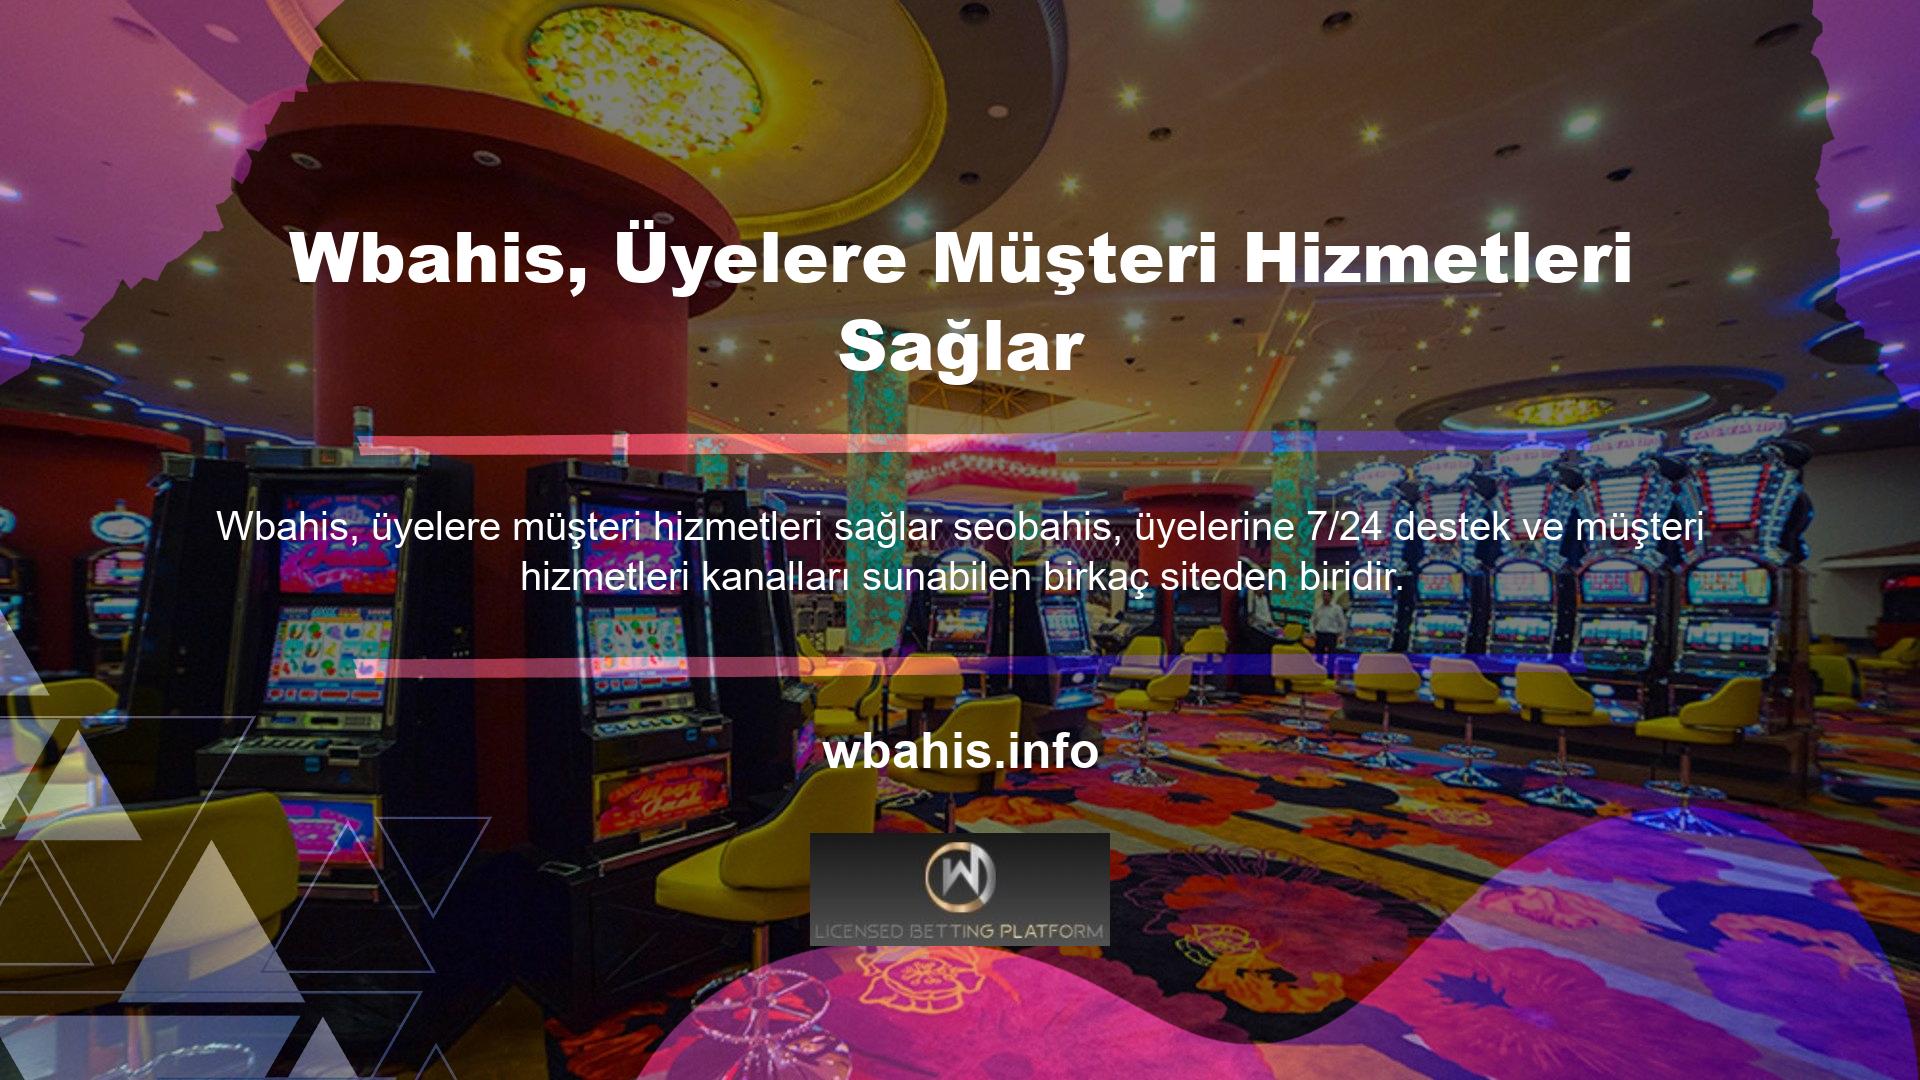 Şirket yeni kurulmuş bir canlı bahis sitesi olmasına rağmen oldukça kaliteli bahis ve casino hizmetleri sunmaktadır